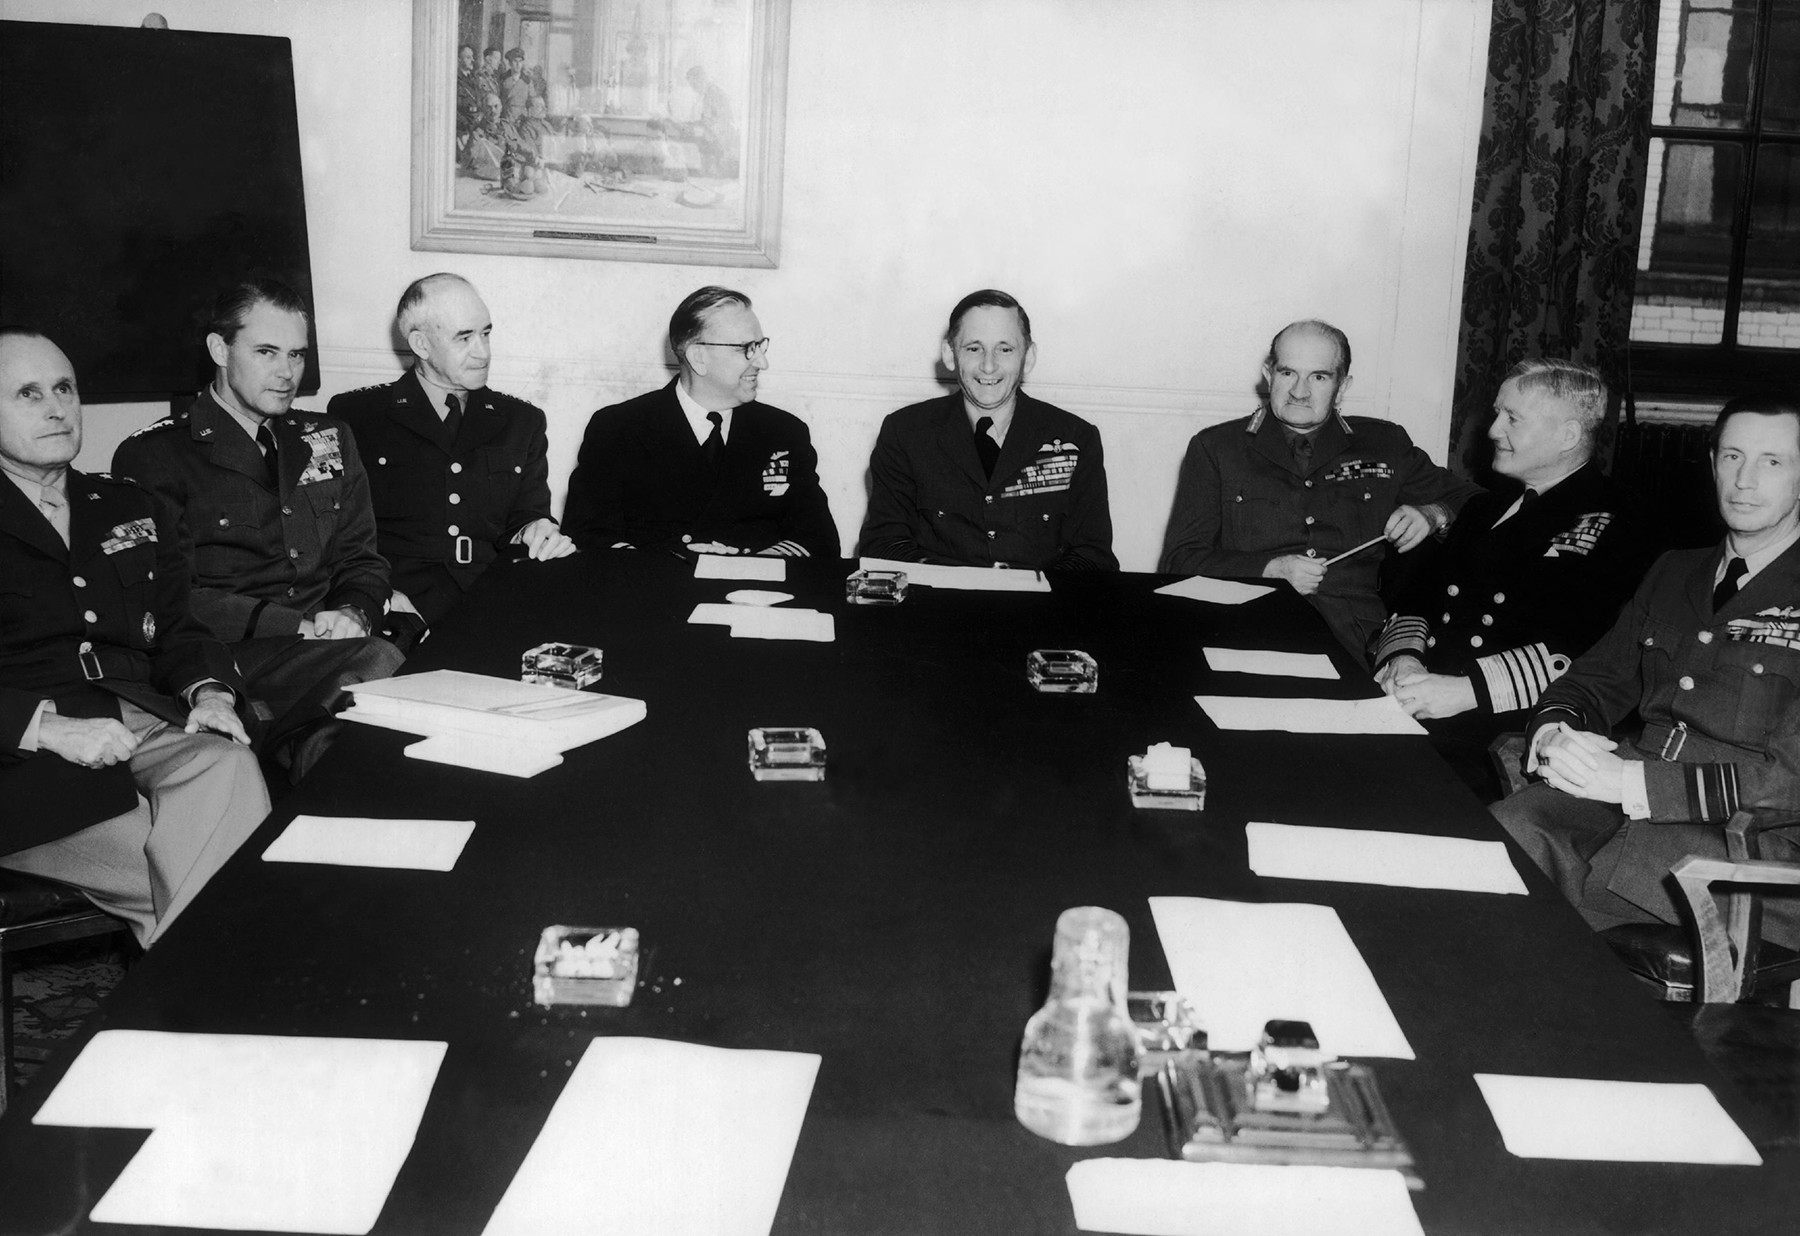 ロンドンの会議にて。左から右：アルフレド・グルンター、ホイト・ヴァンデンバーグ、オマール・ブラッドレー、ルイス・デンフェルド、ウィリアム・テッダー、ウィリアム・スリム、フレーザー元帥、ウィリアム・エリオト。